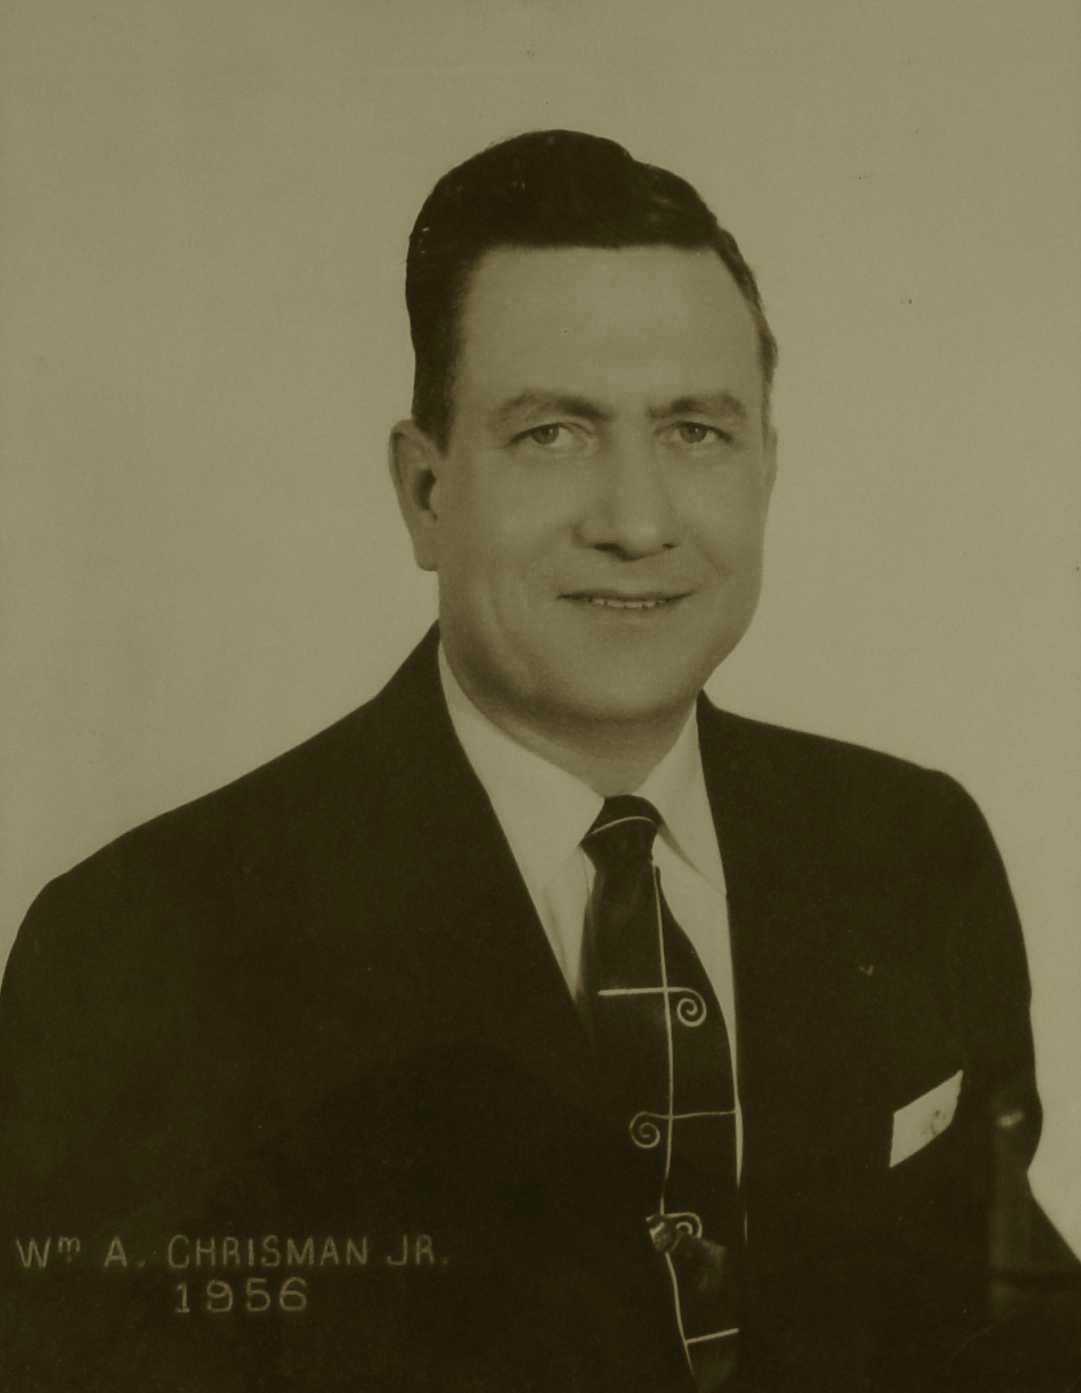 William A. Chrisman, Jr., 1956